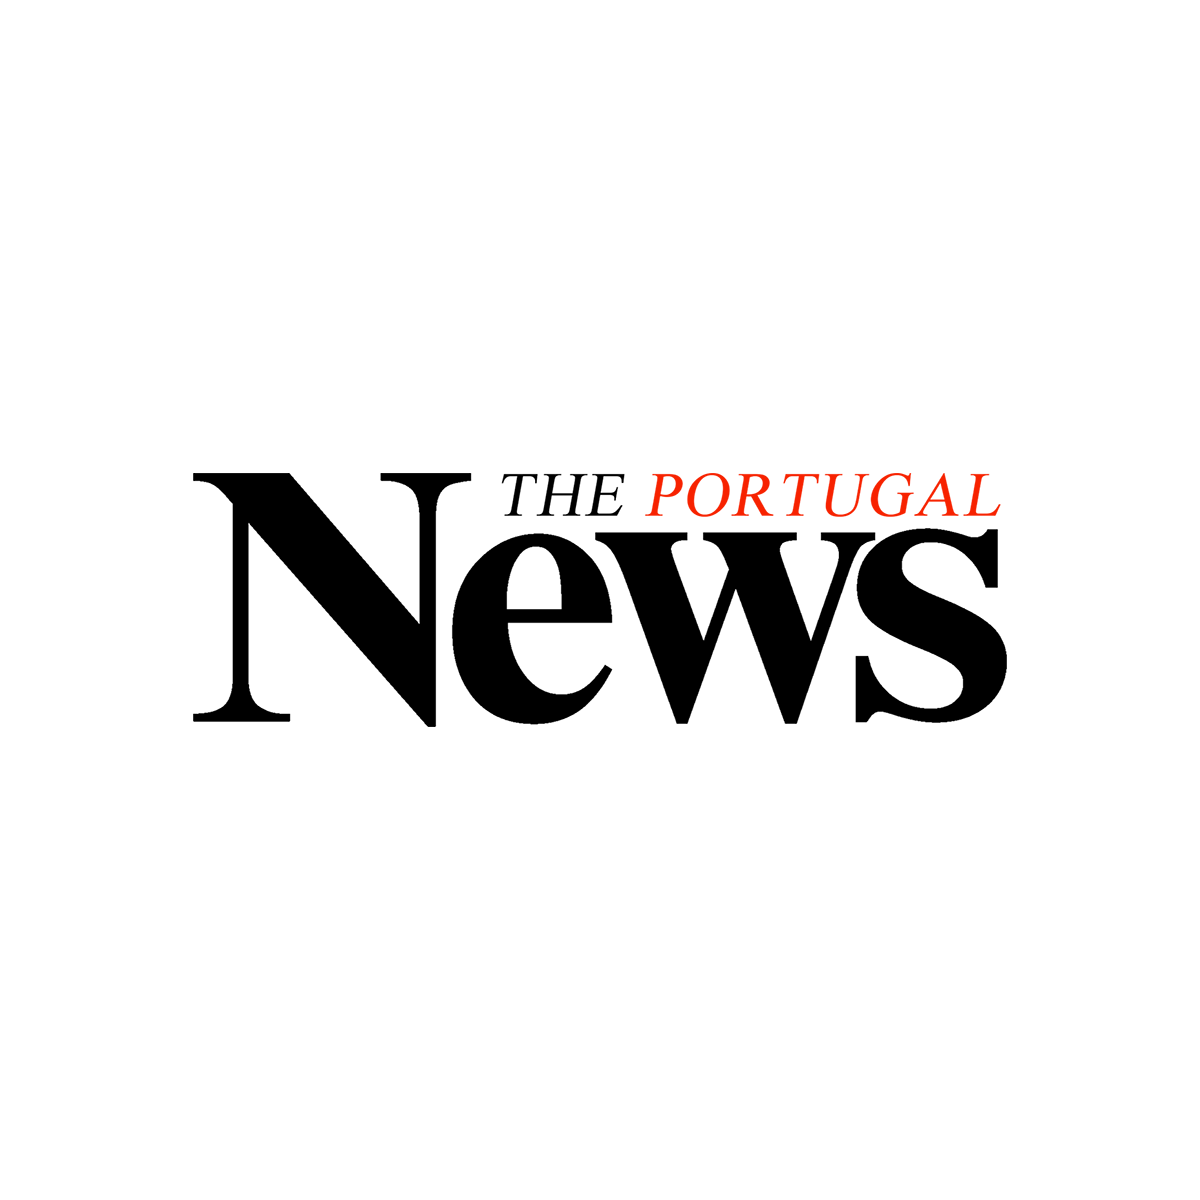 Logo Theportugalnews (2)